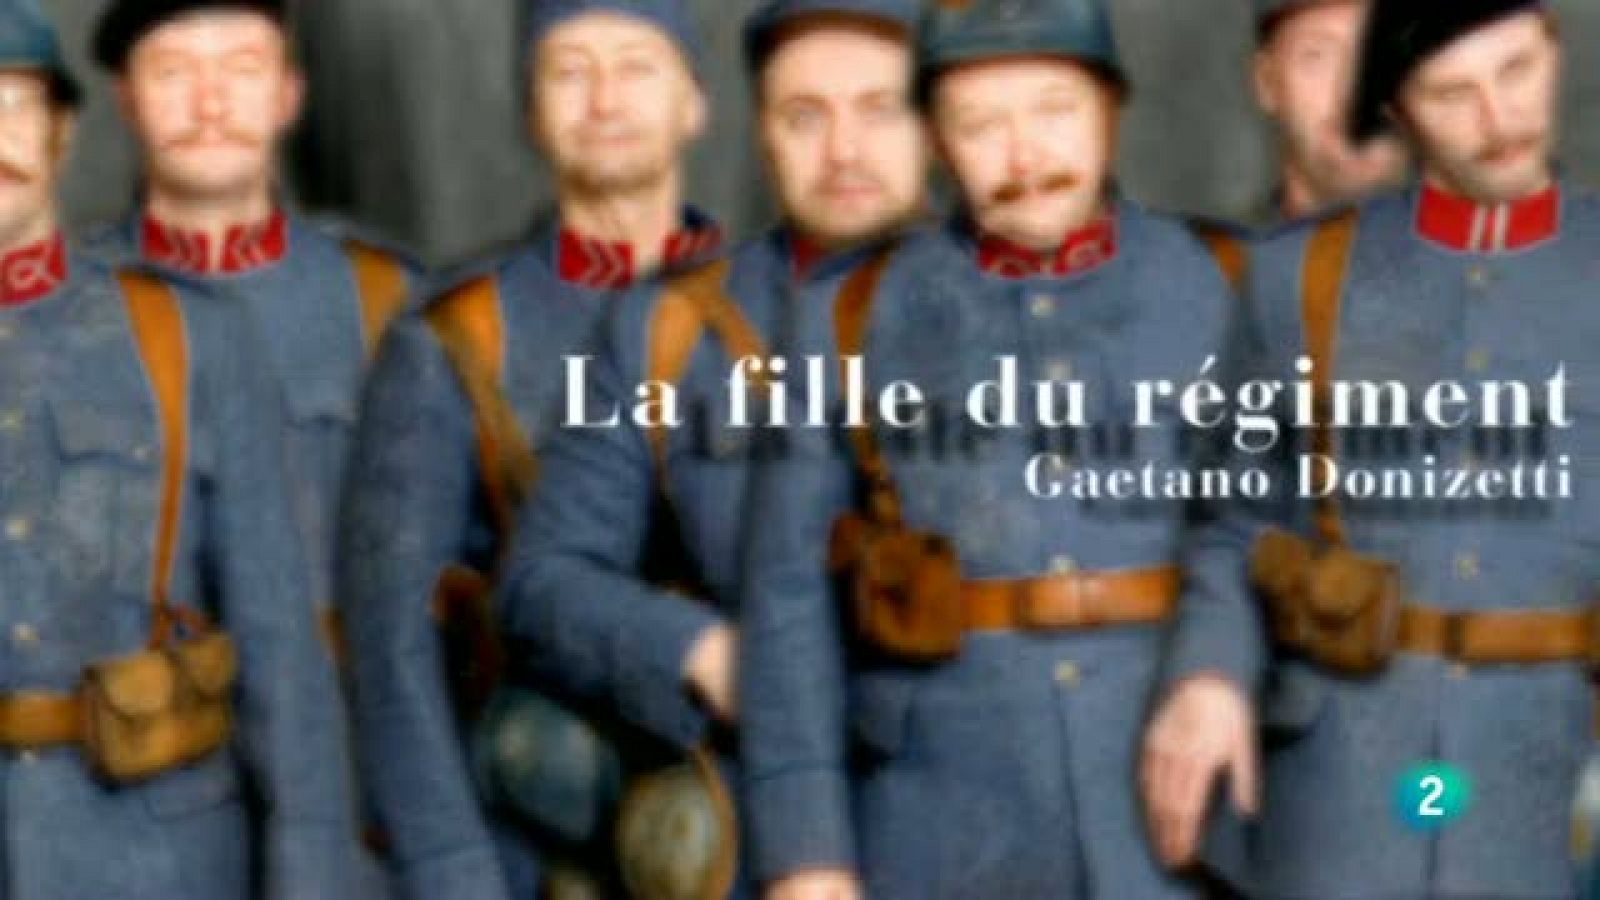 Òpera oberta  -  "La fille du régiment"